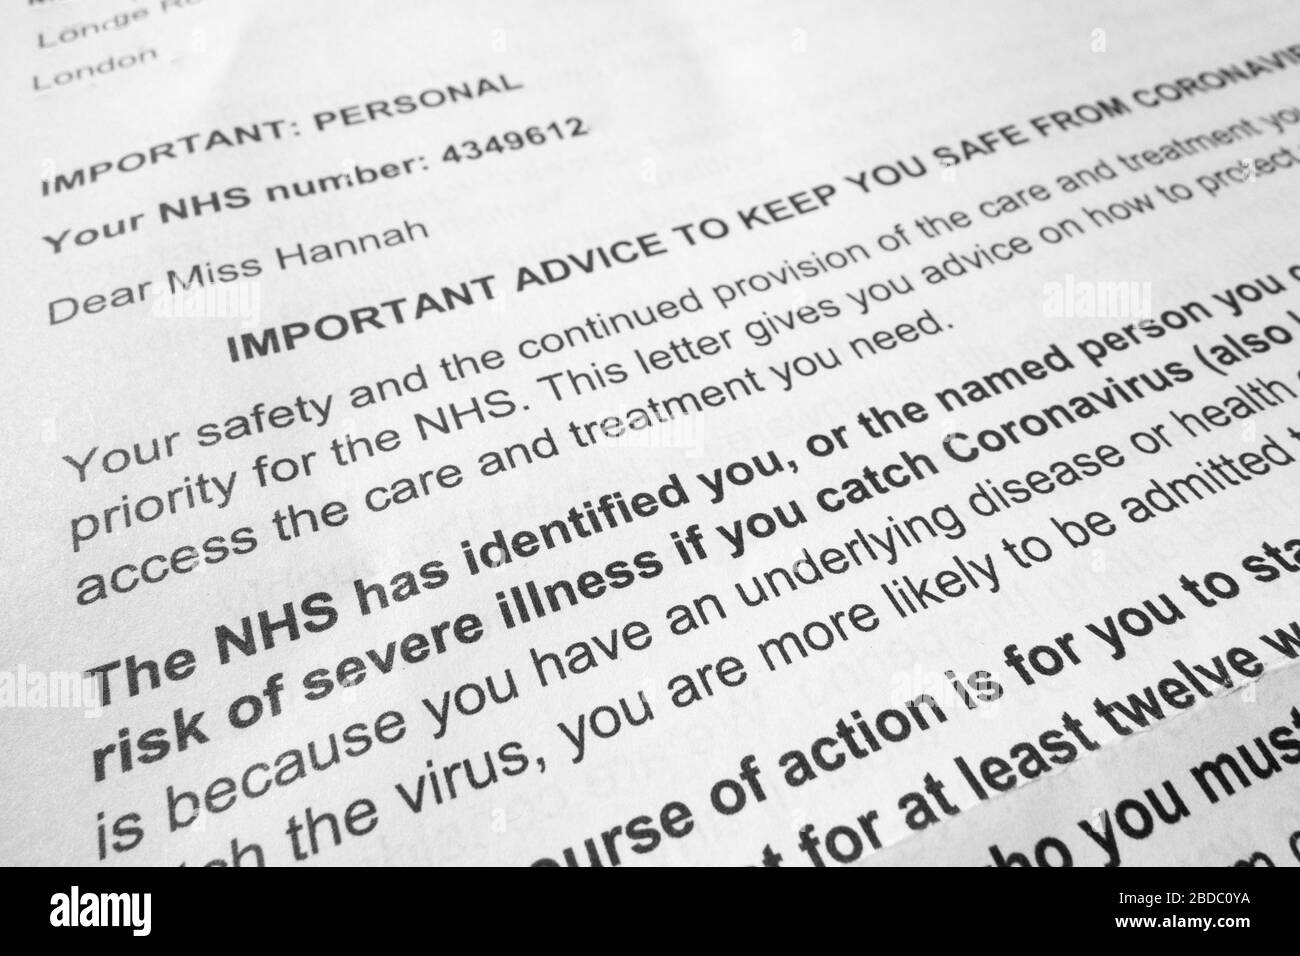 NHS Coronavirus lettre de conseils médicaux pour les personnes souffrant d'une condition de santé sous-jacente Banque D'Images